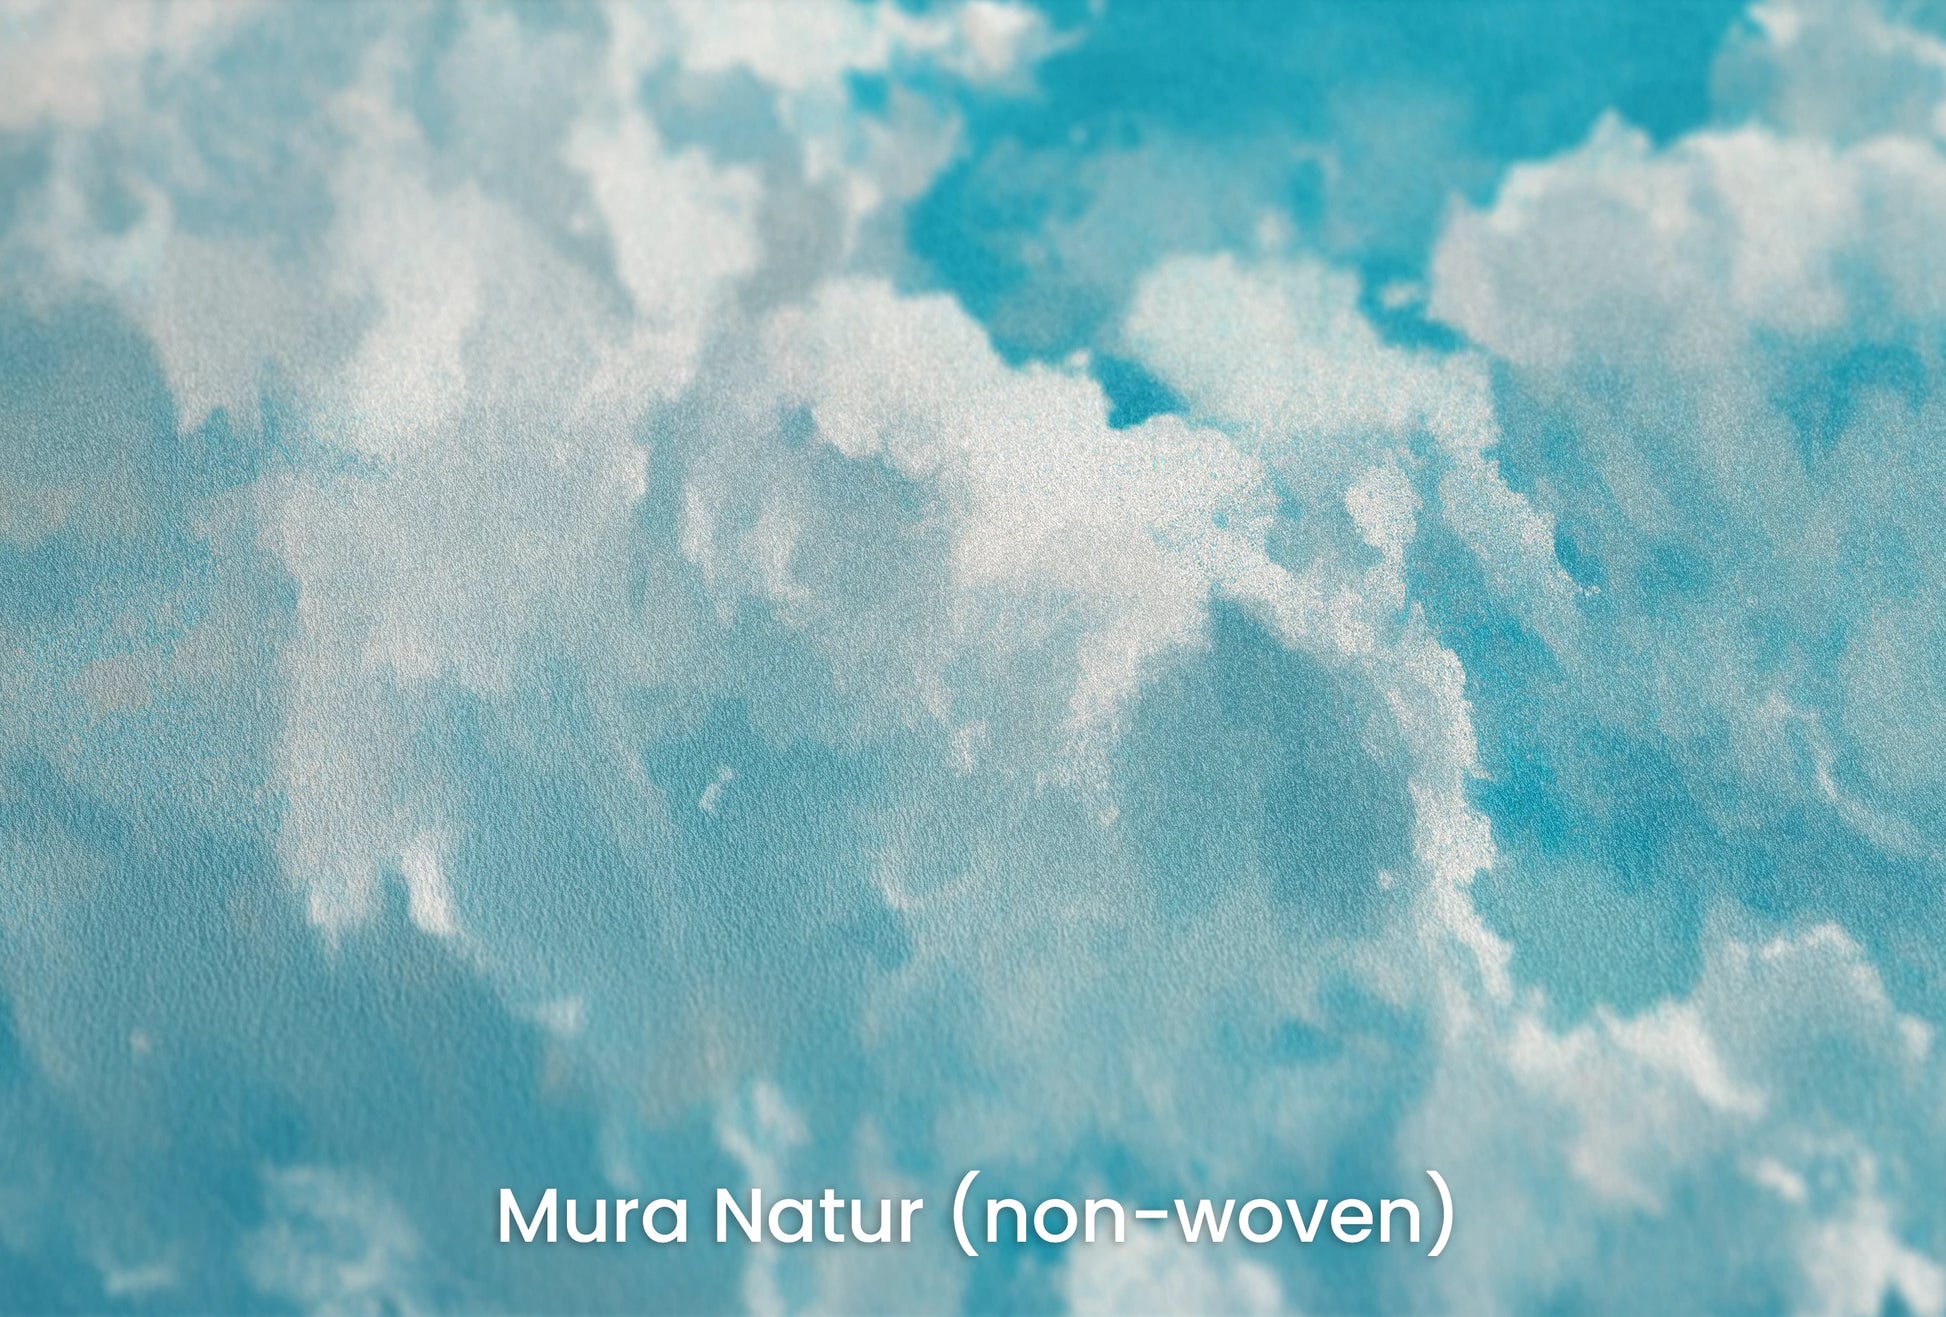 Zbliżenie na artystyczną fototapetę o nazwie Azure Purity na podłożu Mura Natur (non-woven) - naturalne i ekologiczne podłoże.